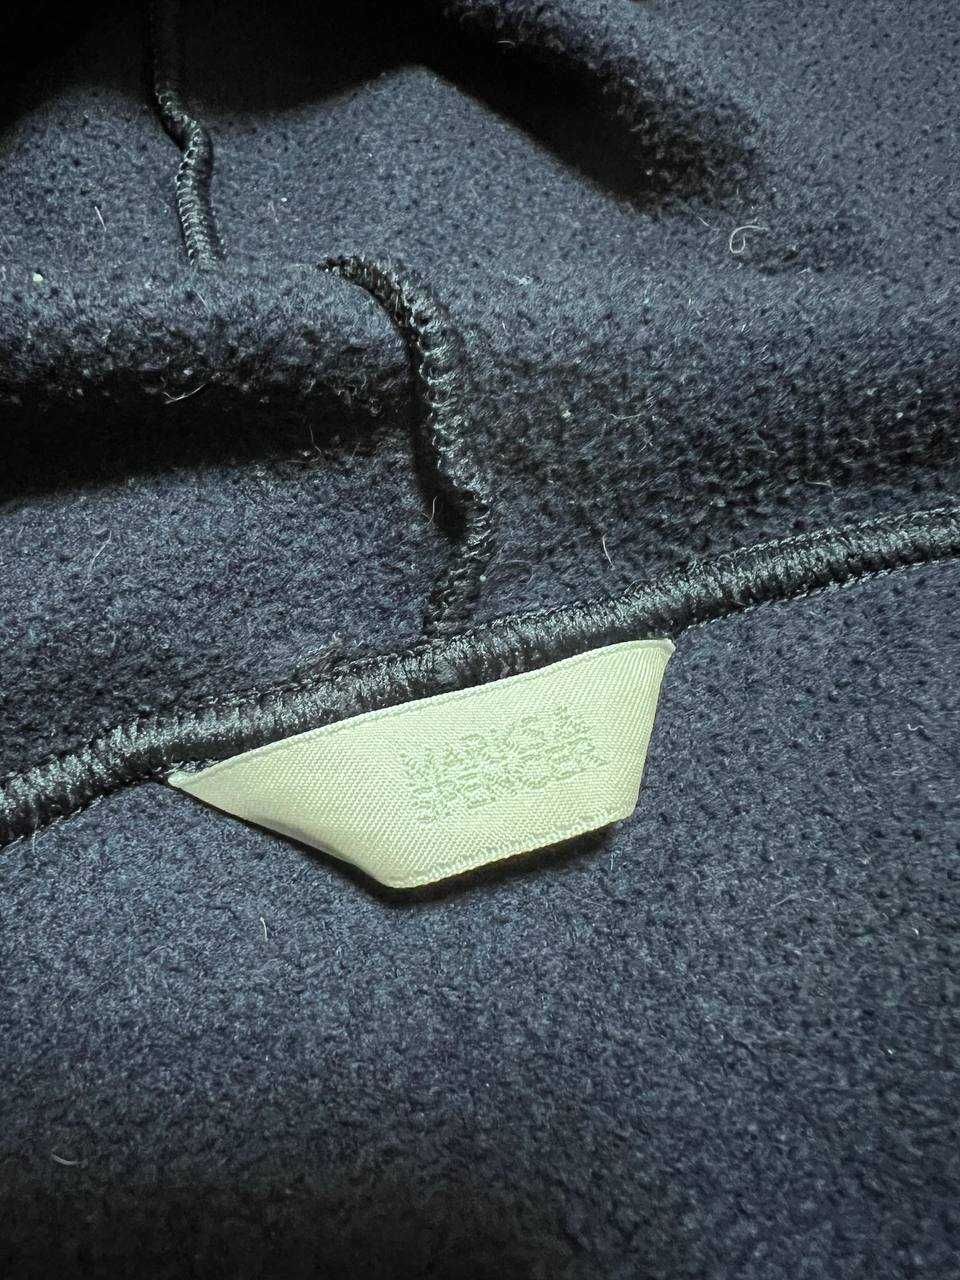 Marks & Spencer халат флісовий, баний, теплий на 9-10 років, 140 см